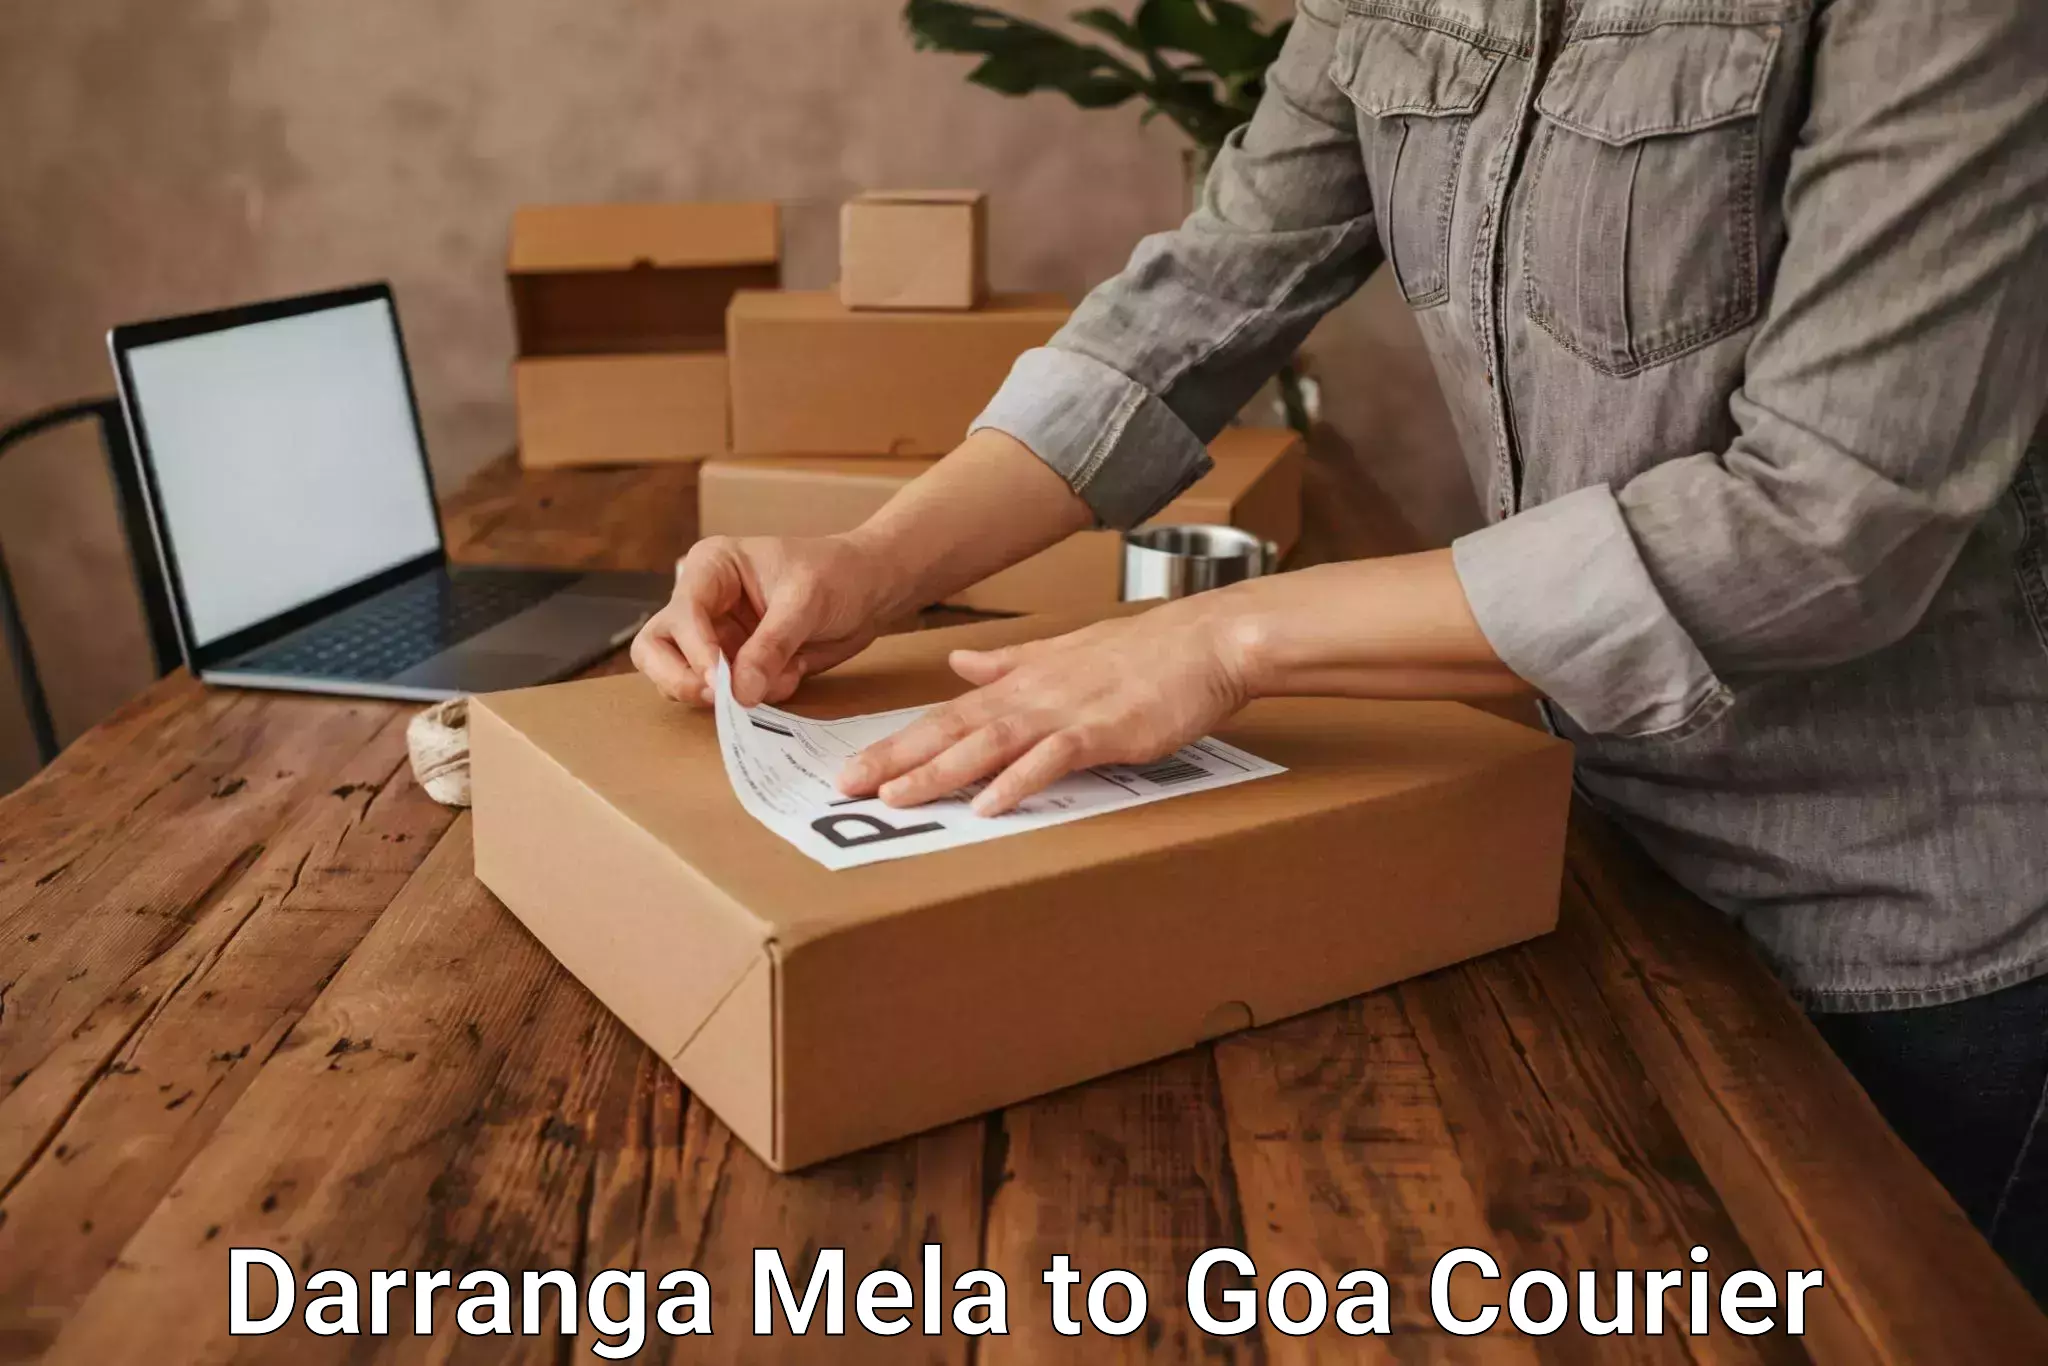 International courier networks Darranga Mela to NIT Goa